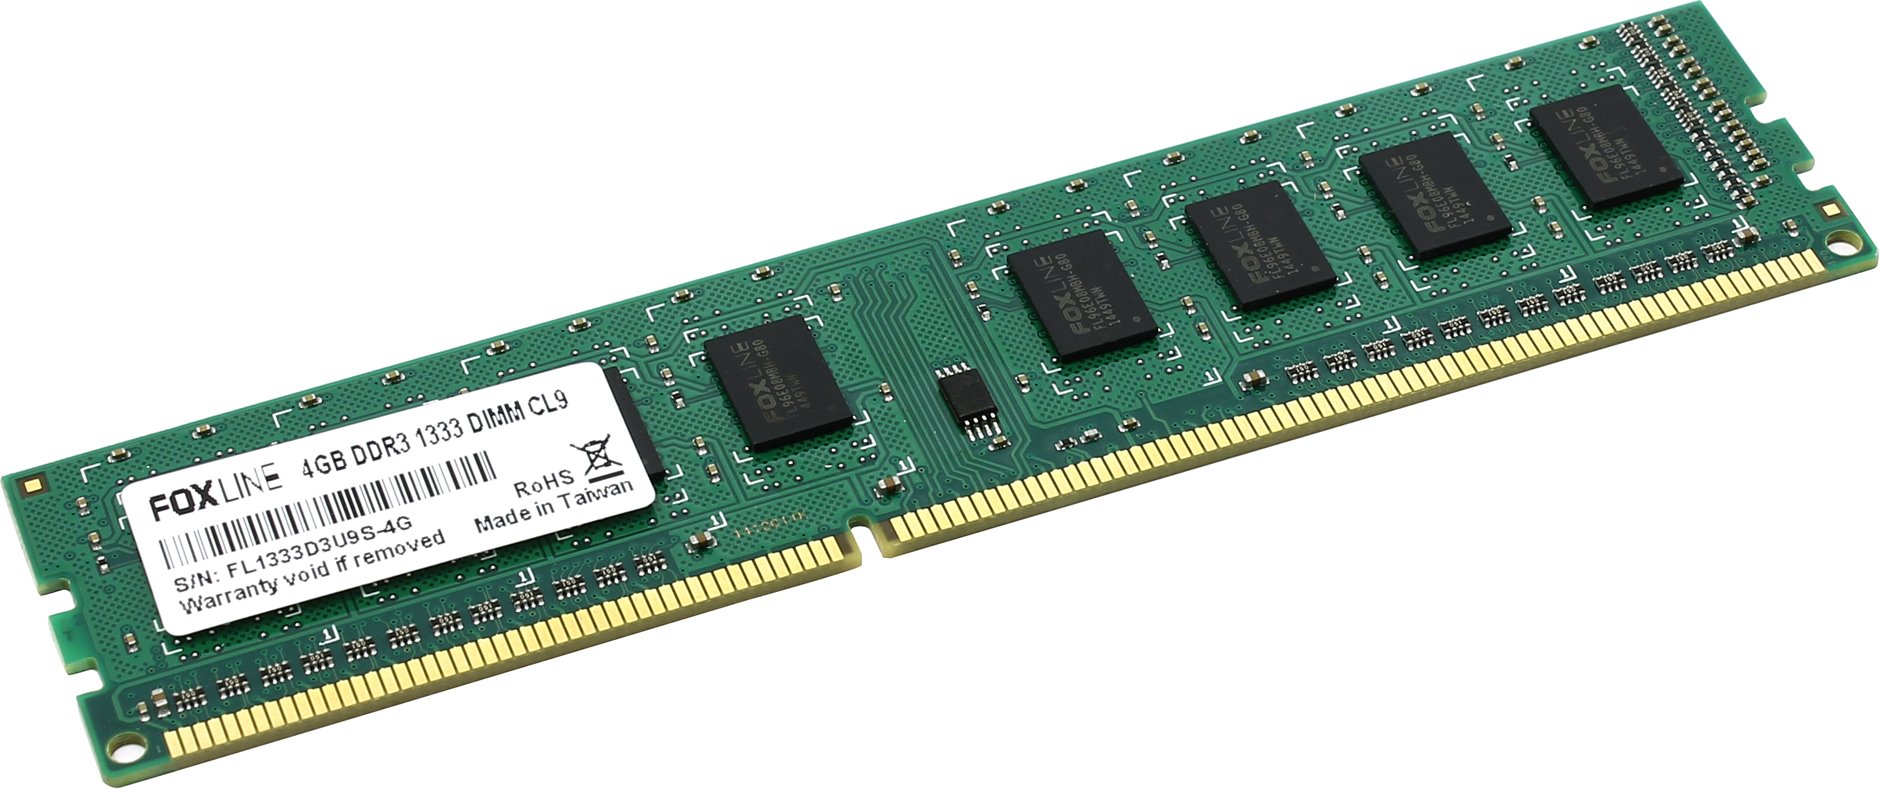 Память оперативная Foxline DIMM 8GB 1600 DDR3  CL11 (512*8) hynix chips, FL1600D3U11-8GH